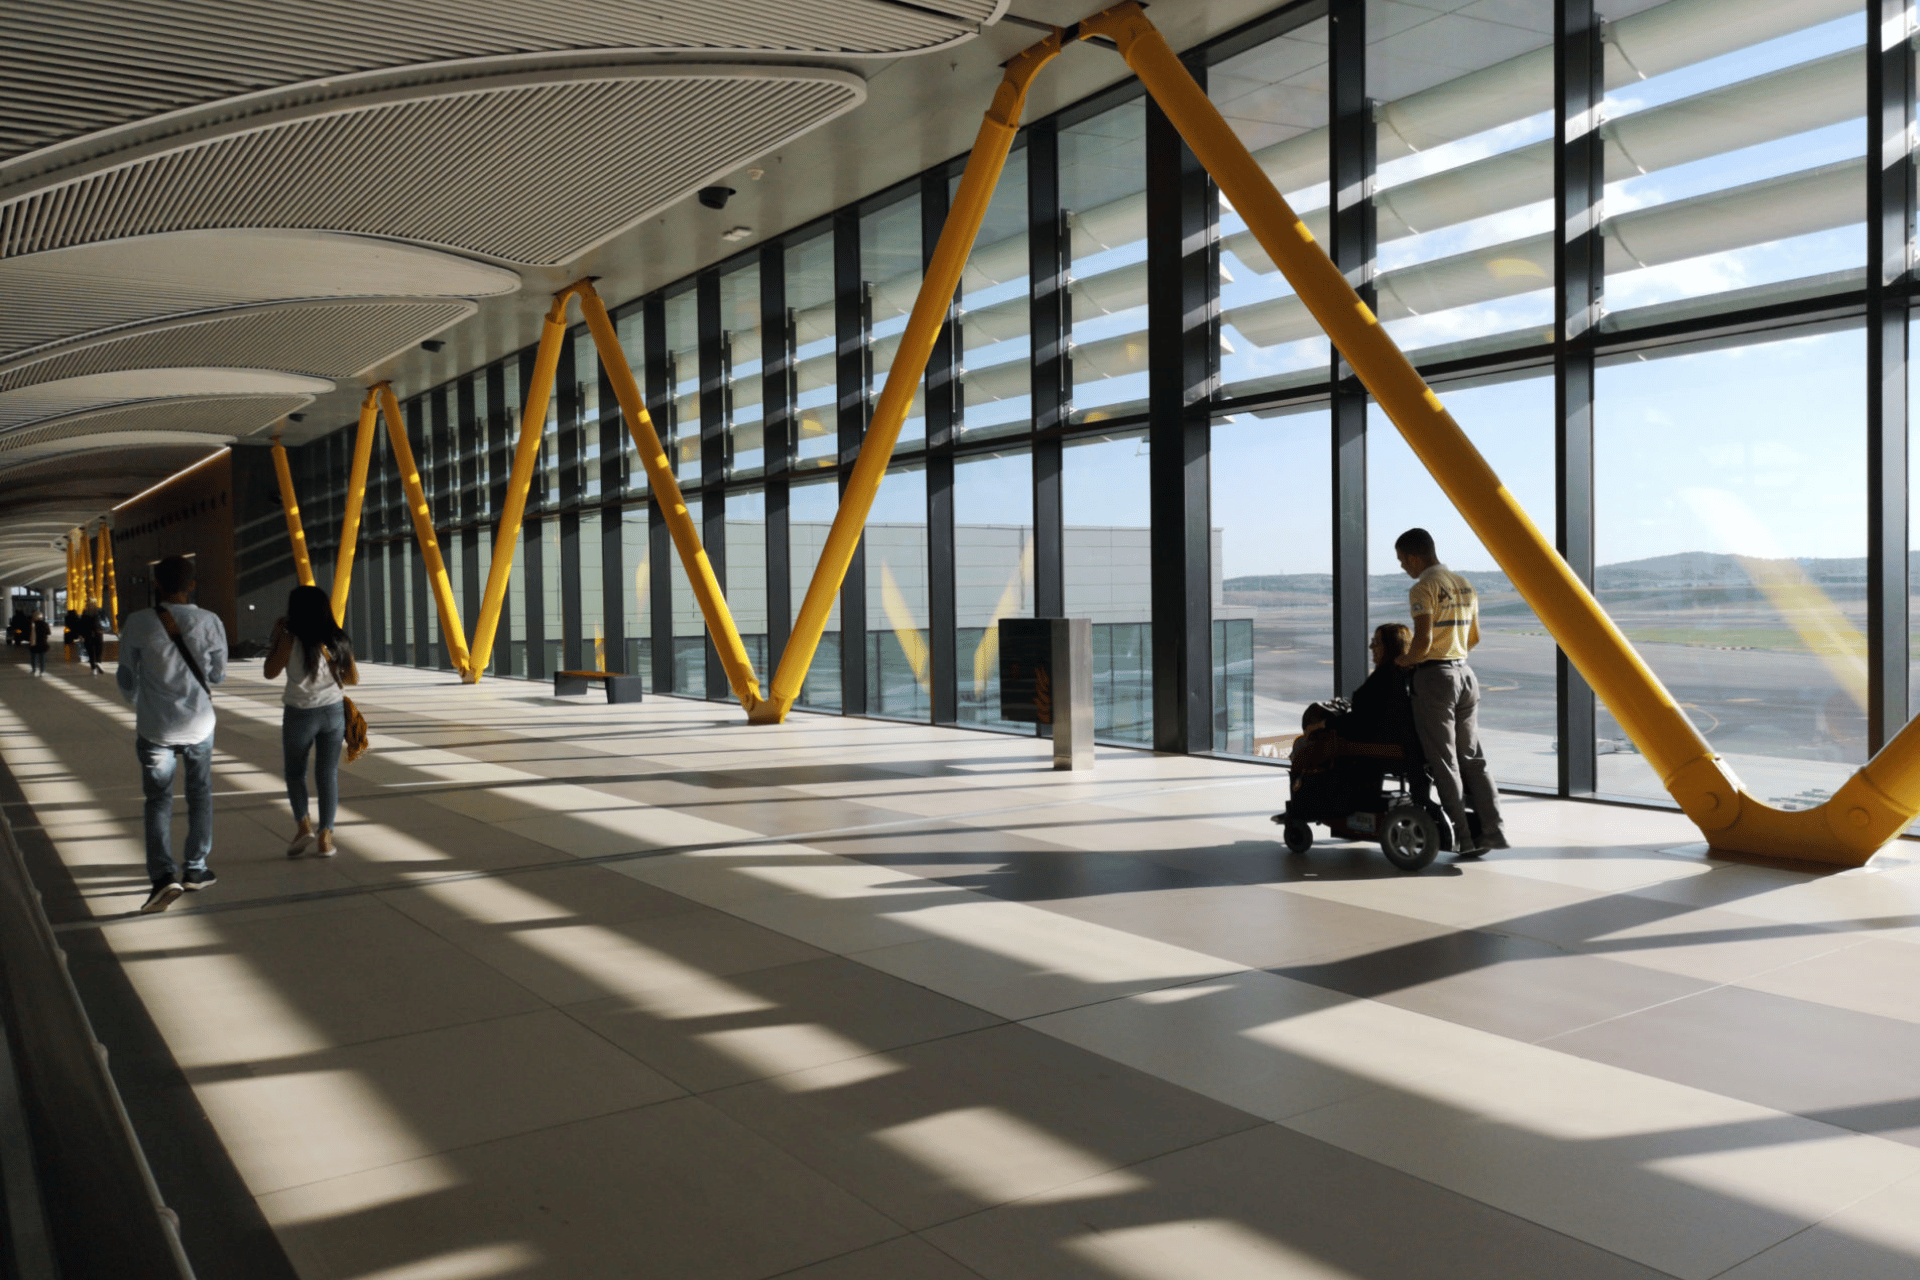 A man in a wheelchair in an airport